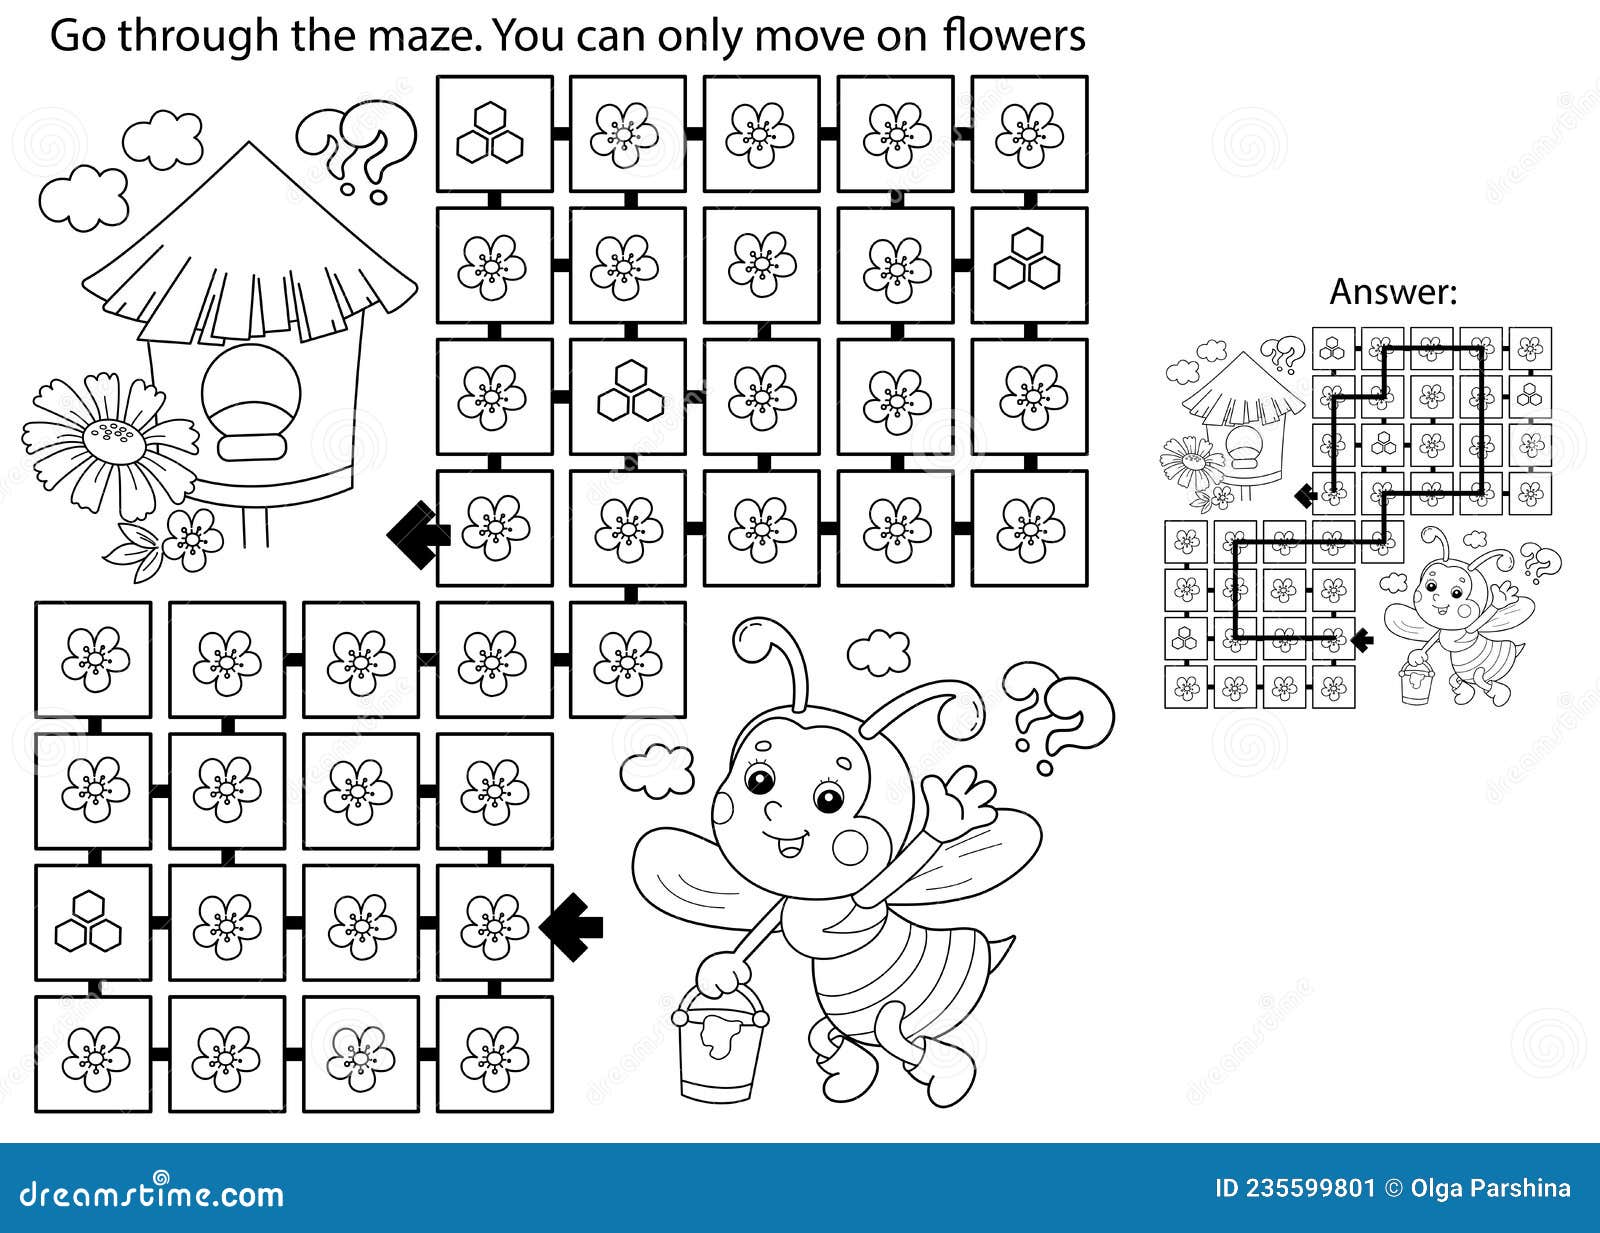 Folhas de atividades Pokémon para crianças: quebra-cabeças, labirintos,  páginas para colorir e muito mais